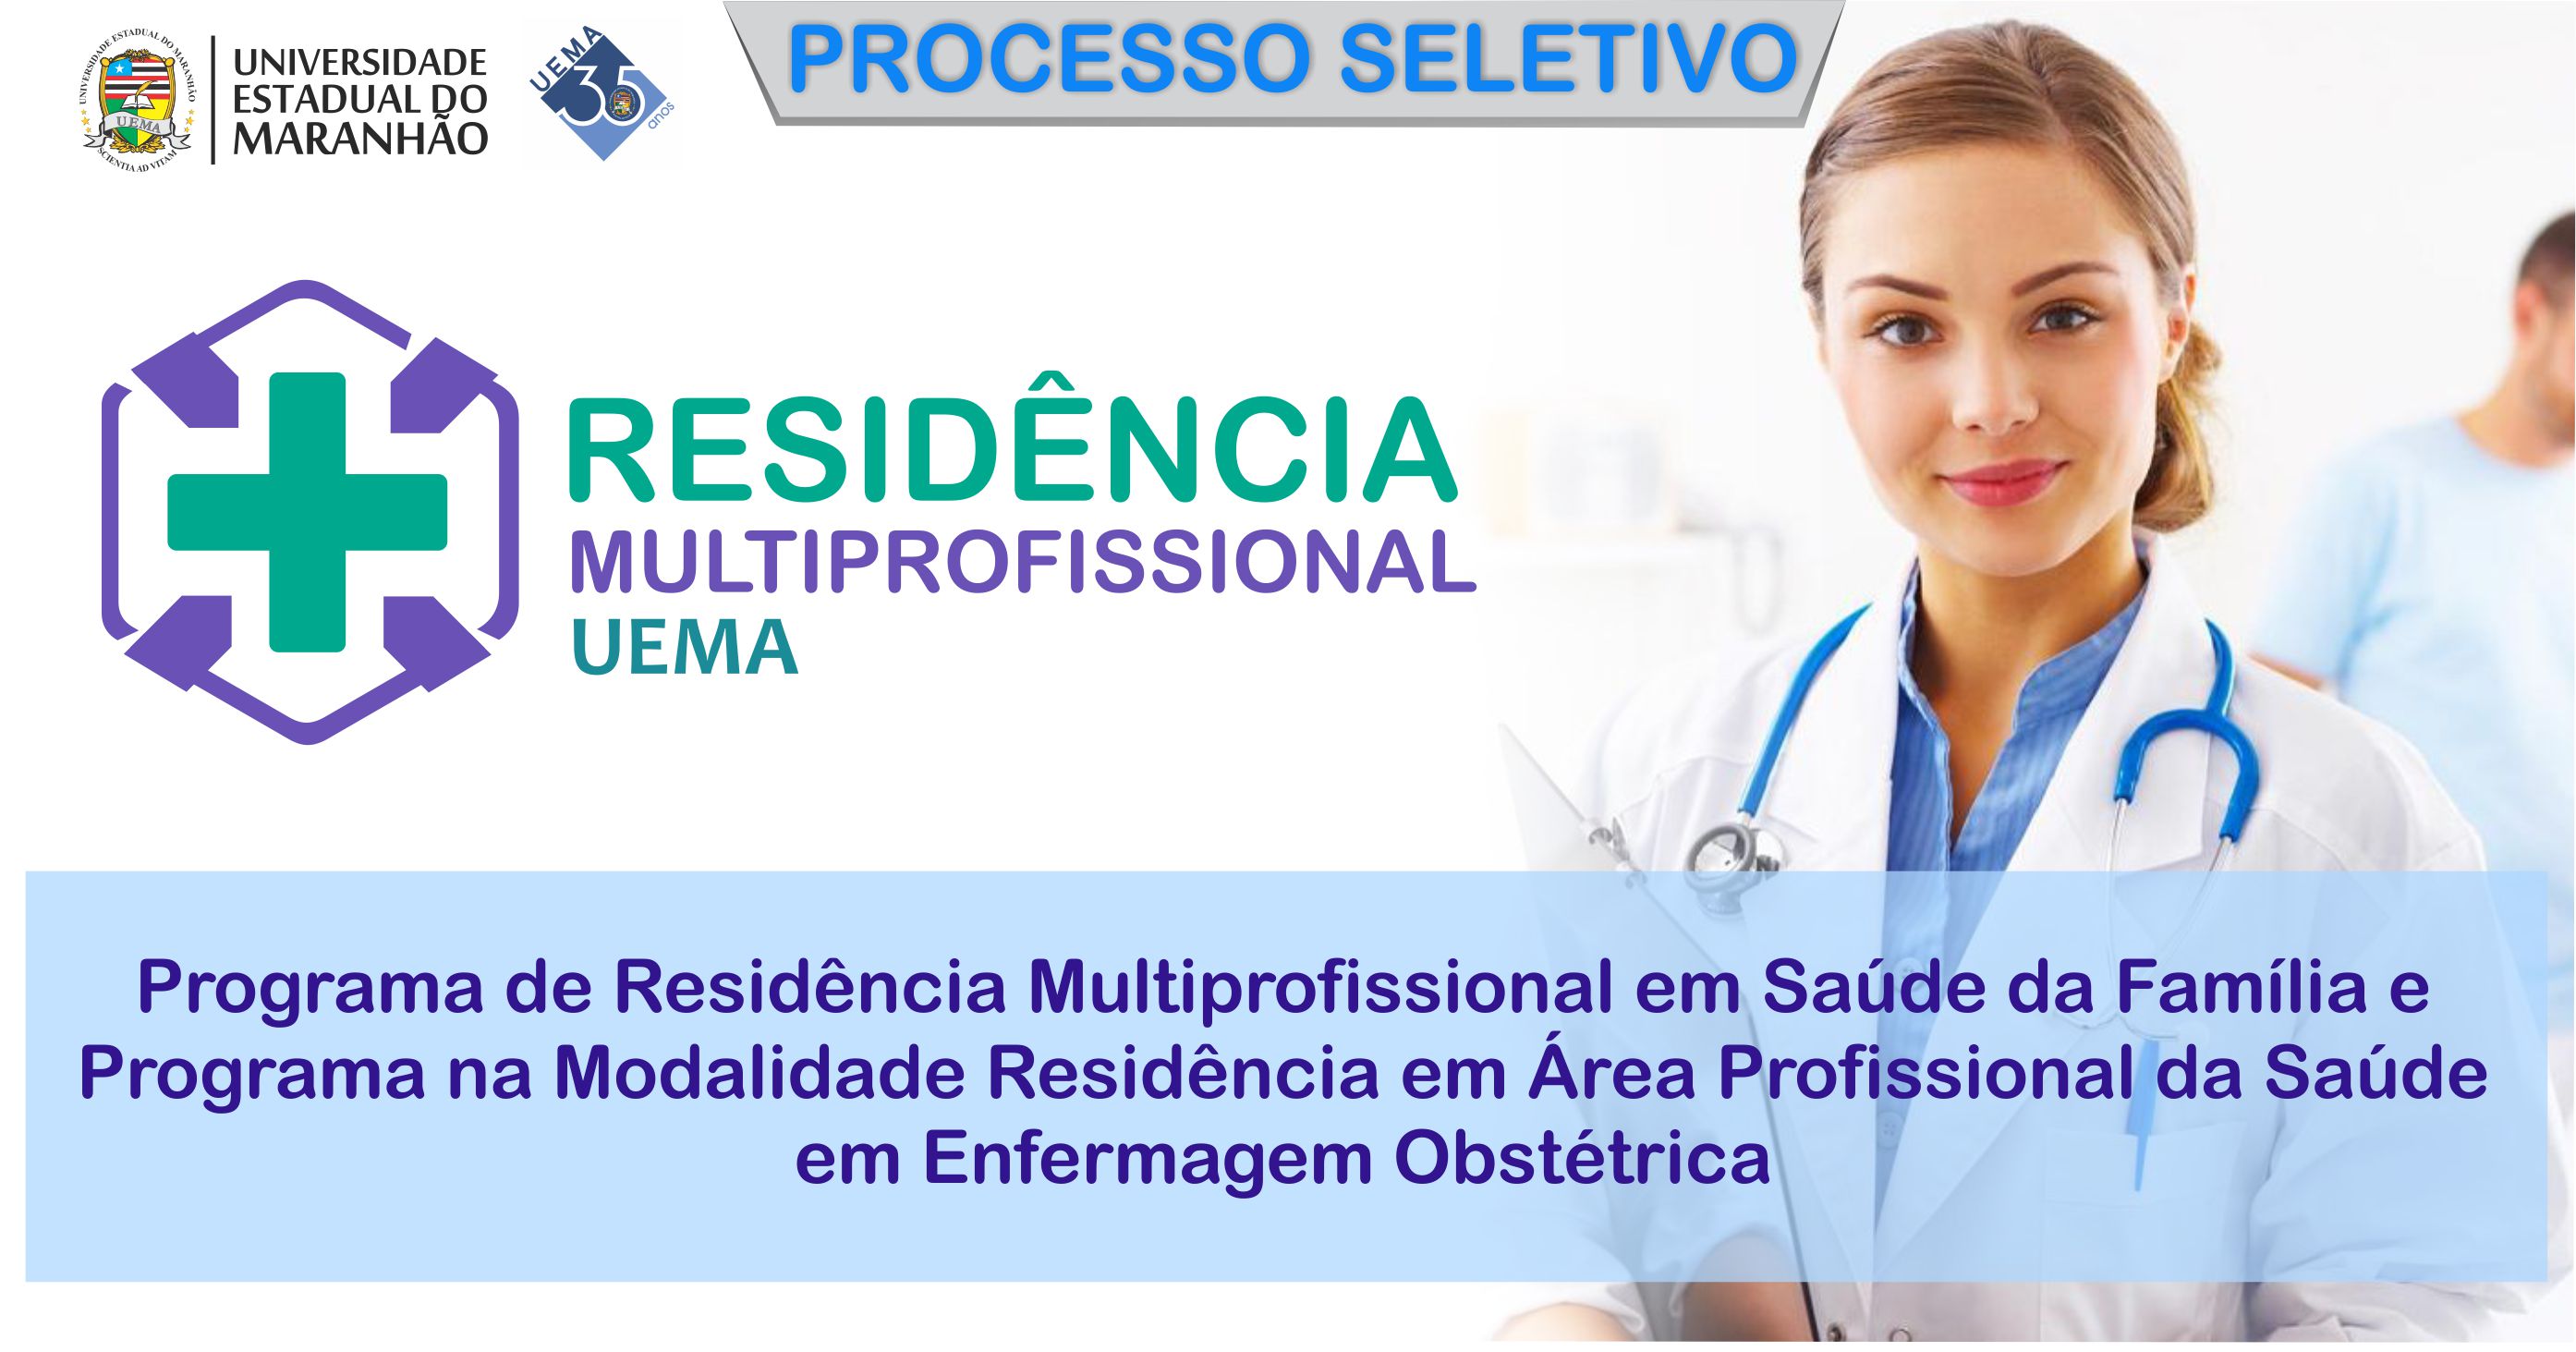 UEMA abre inscrição para Programa de Residência Multiprofissional em Saúde da Família e Programa de Residência em Enfermagem Obstétrica